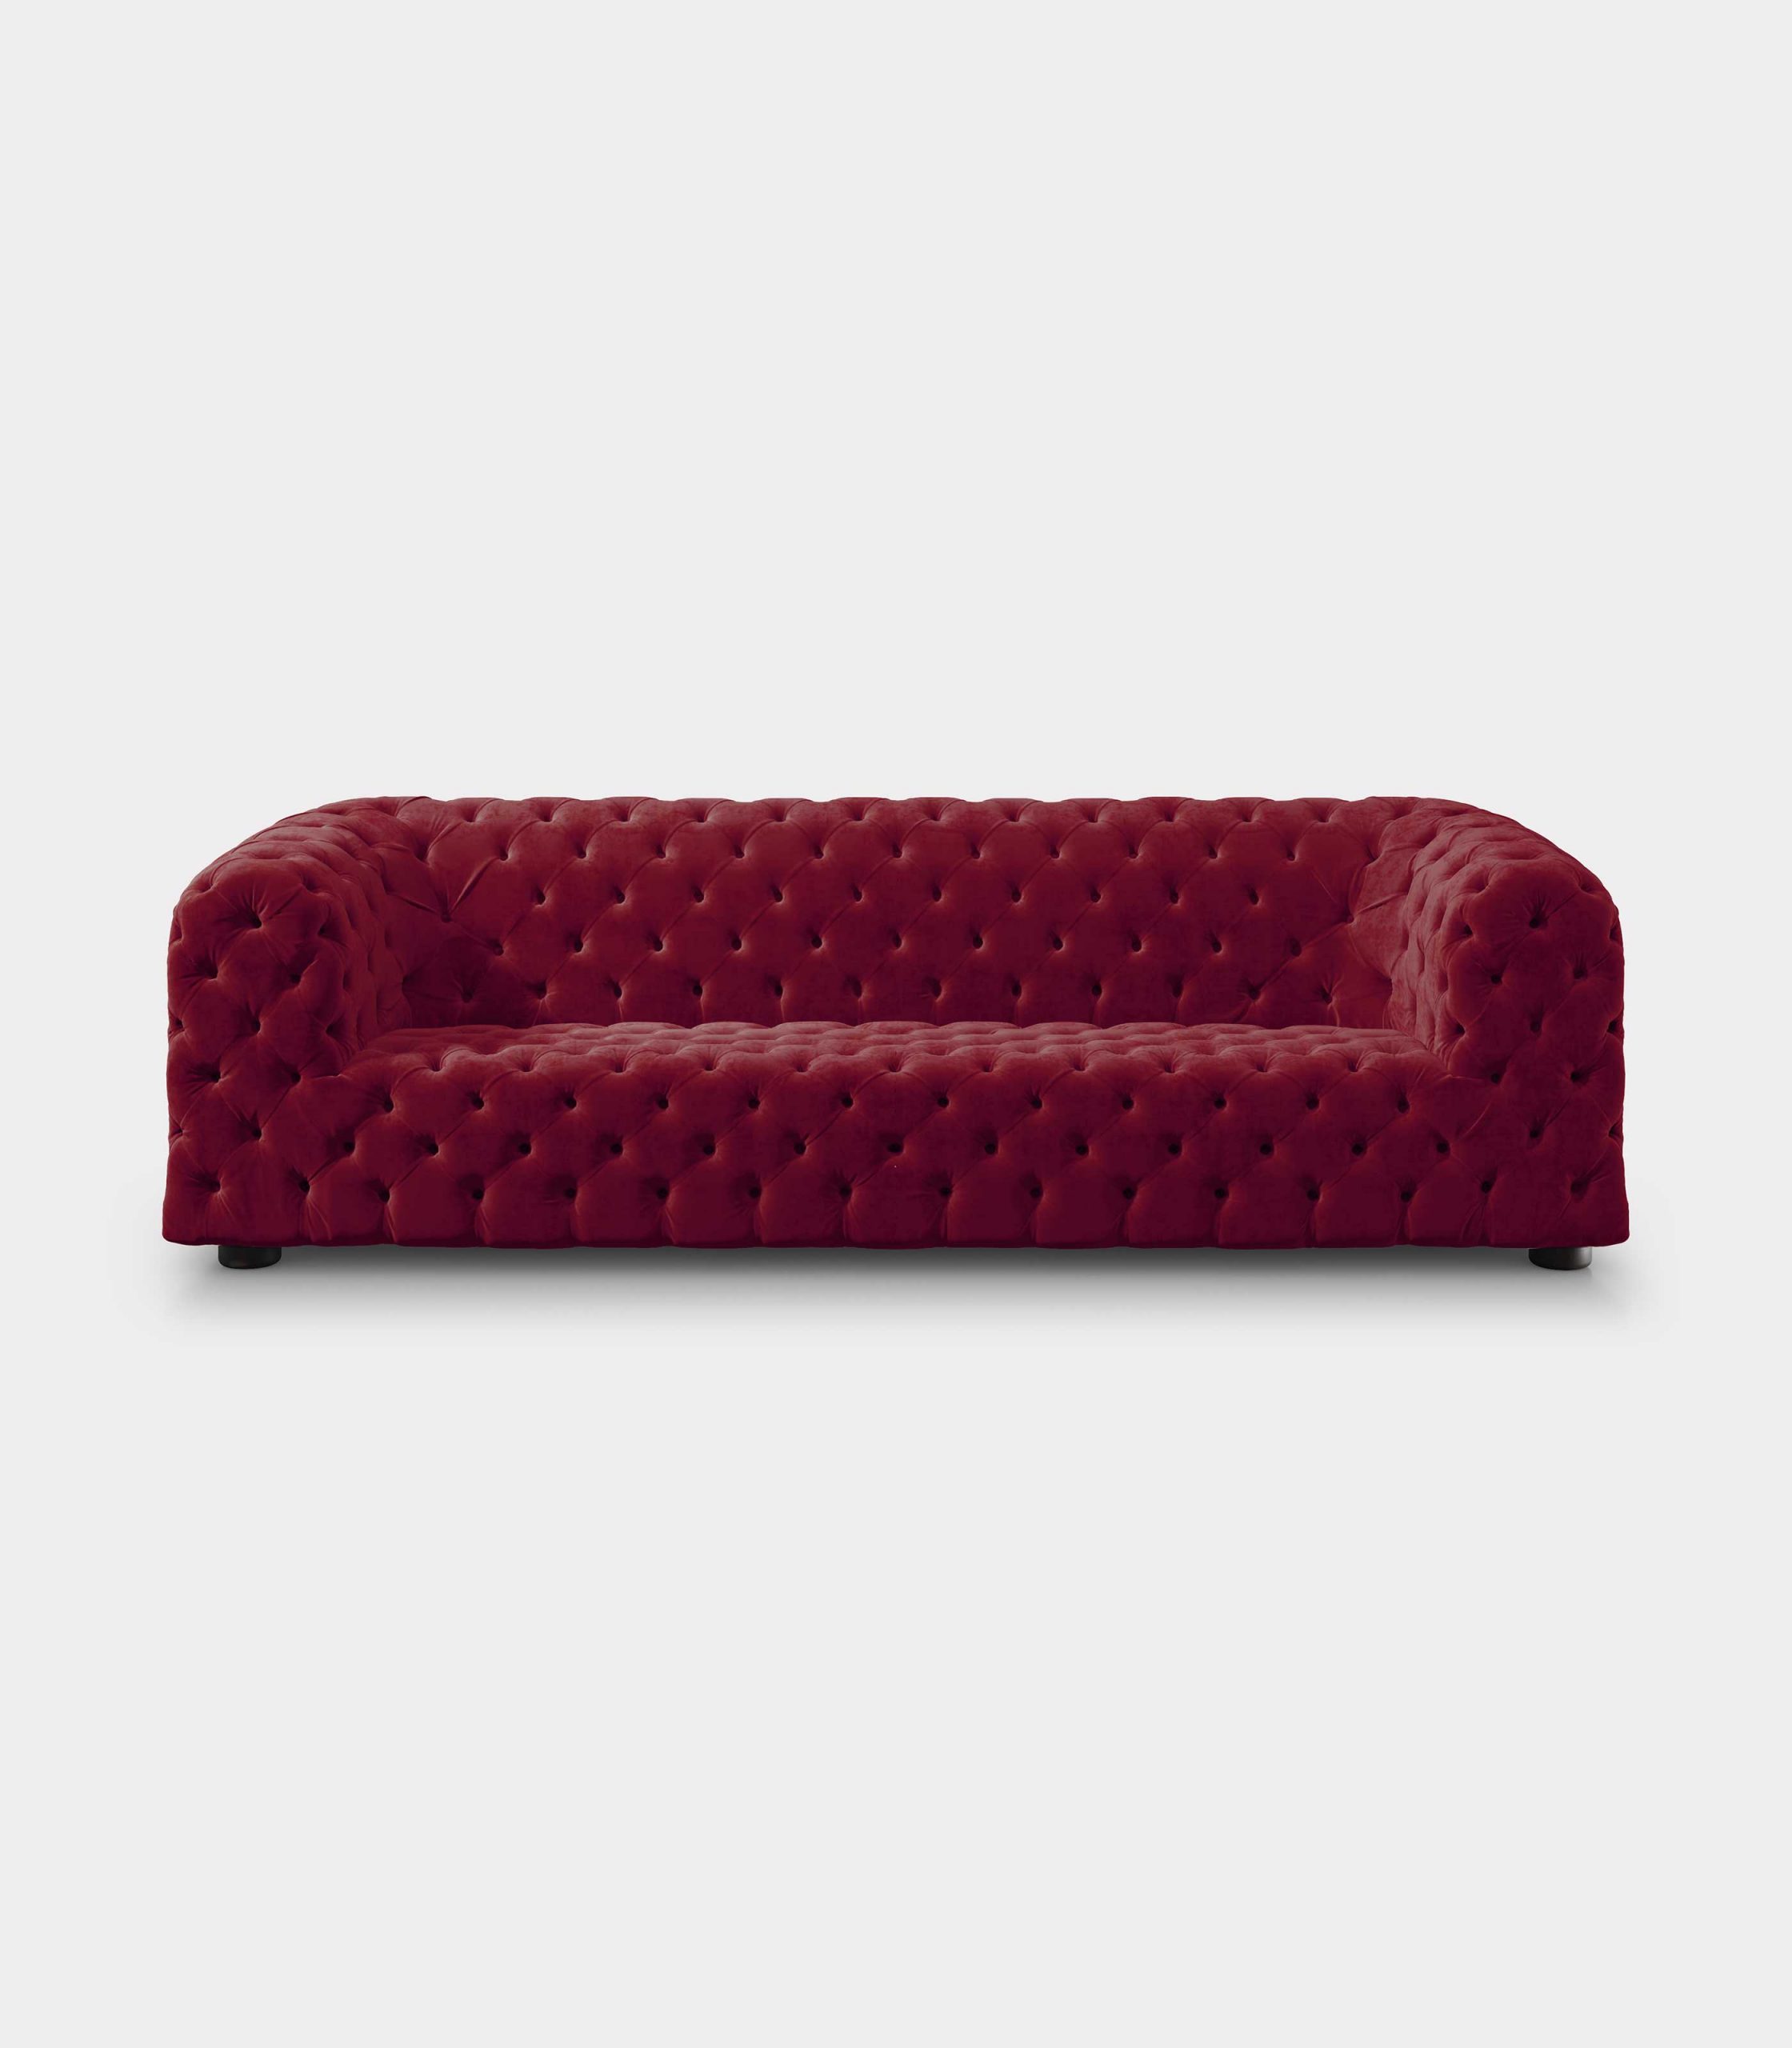 Capitonné red velvet sofa loopo milan design F